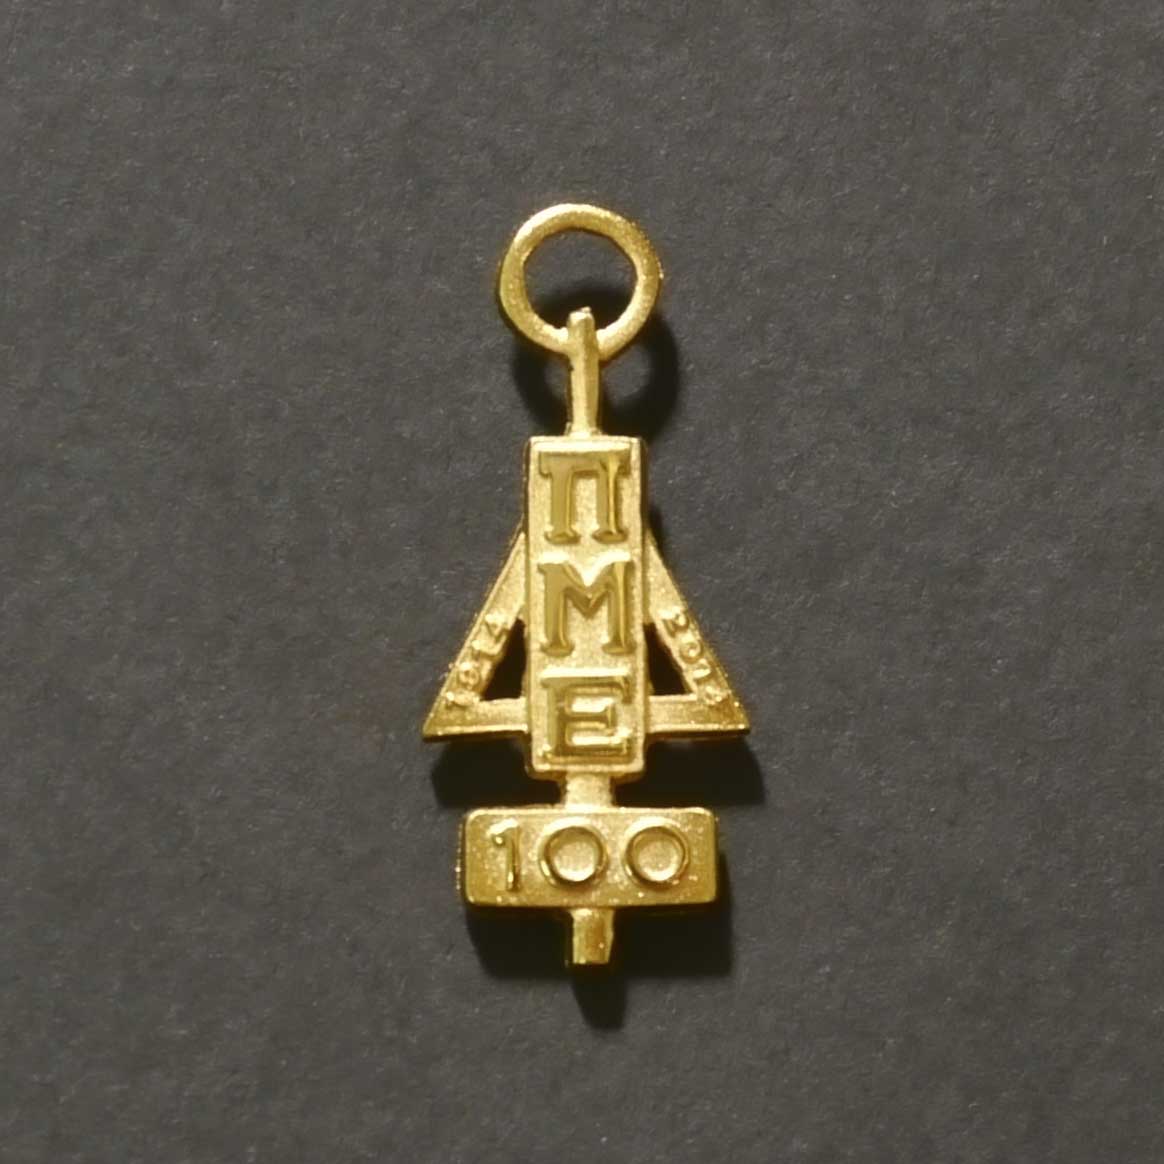 Centennial Key Pin